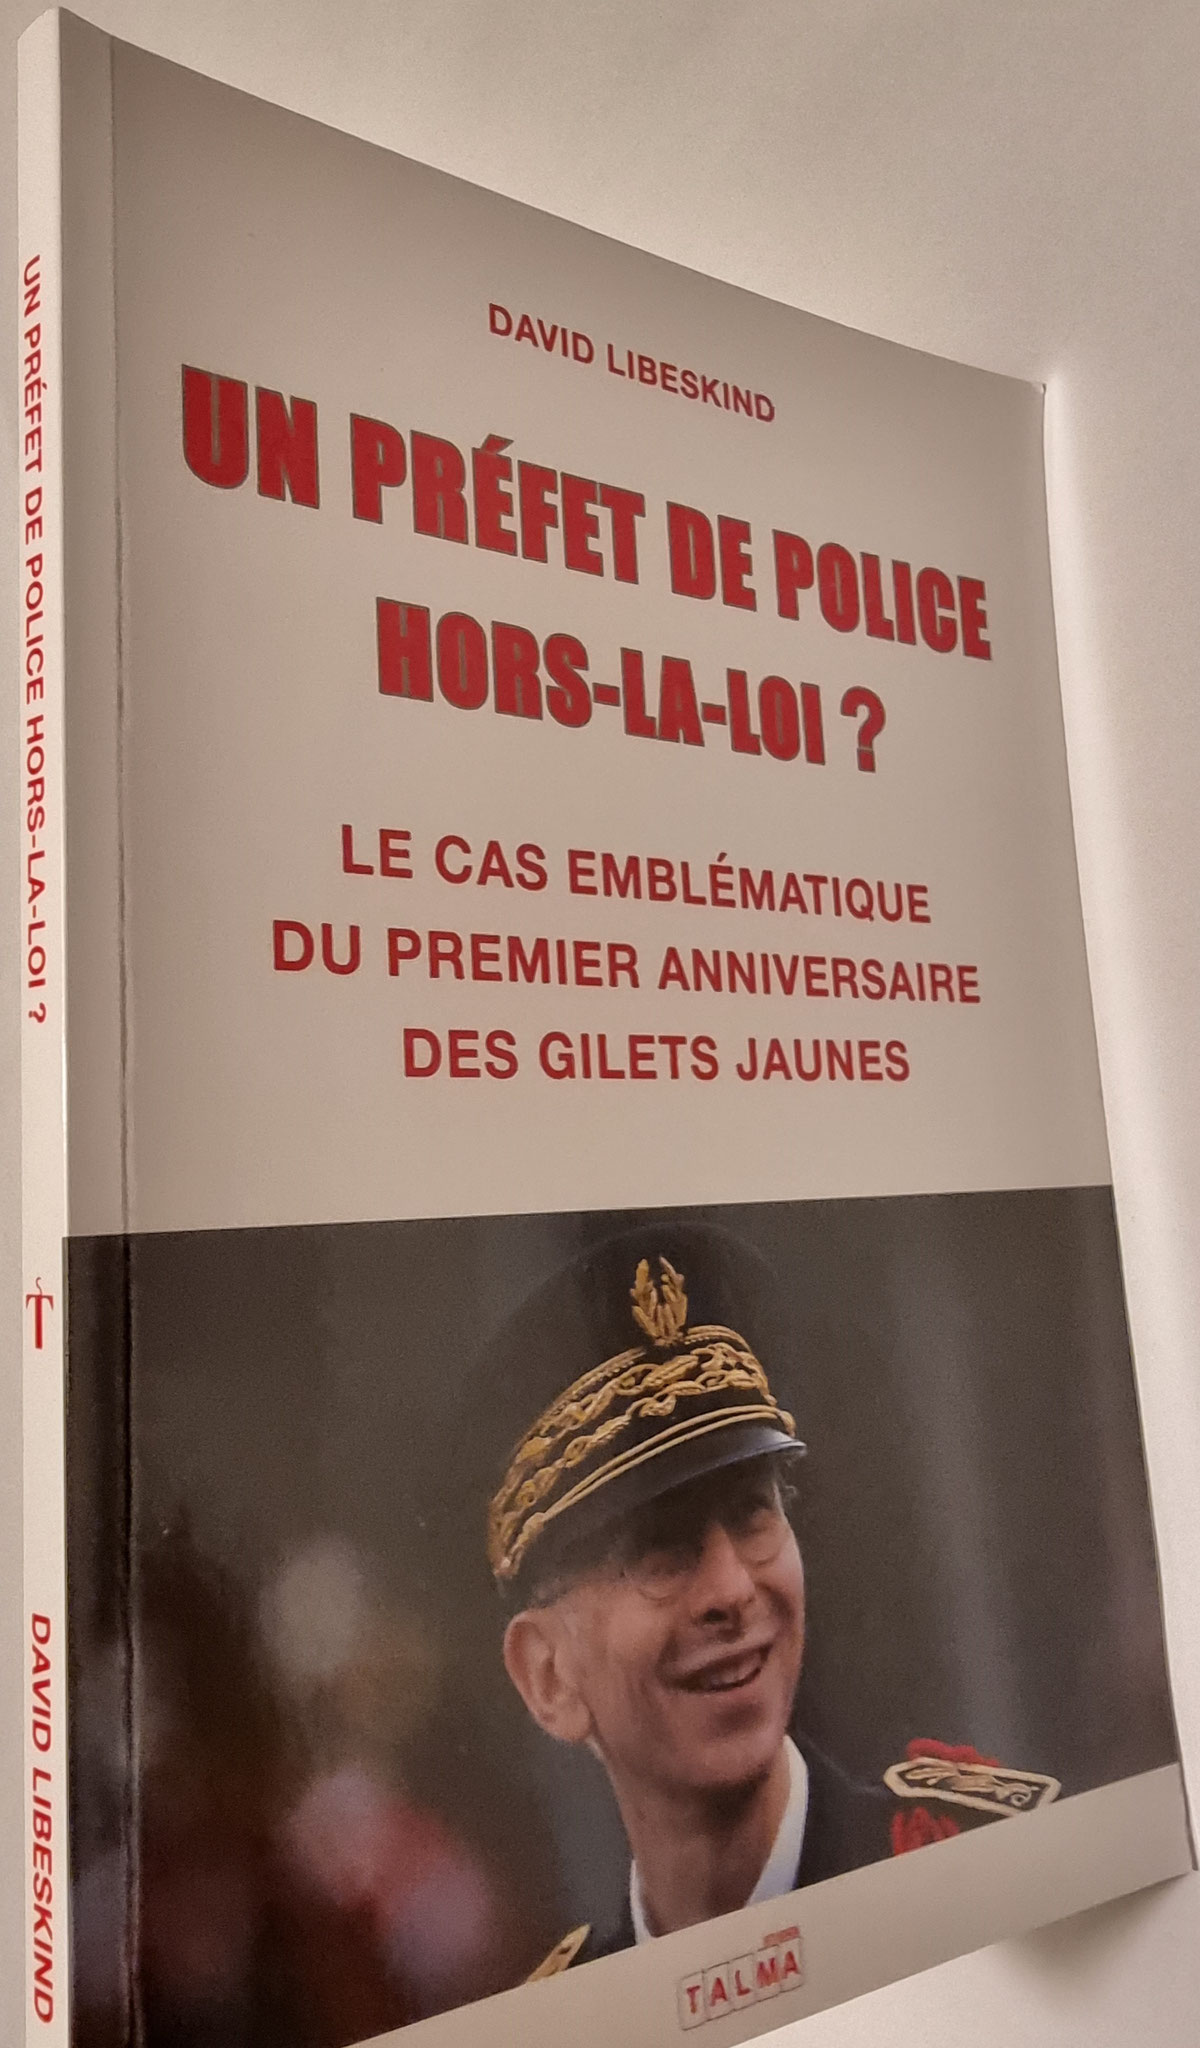 UN PREFET DE POLICE HORS-LA-LOI Le Cas Emblématique du Premier Anniversaire des Gilets Jaunes